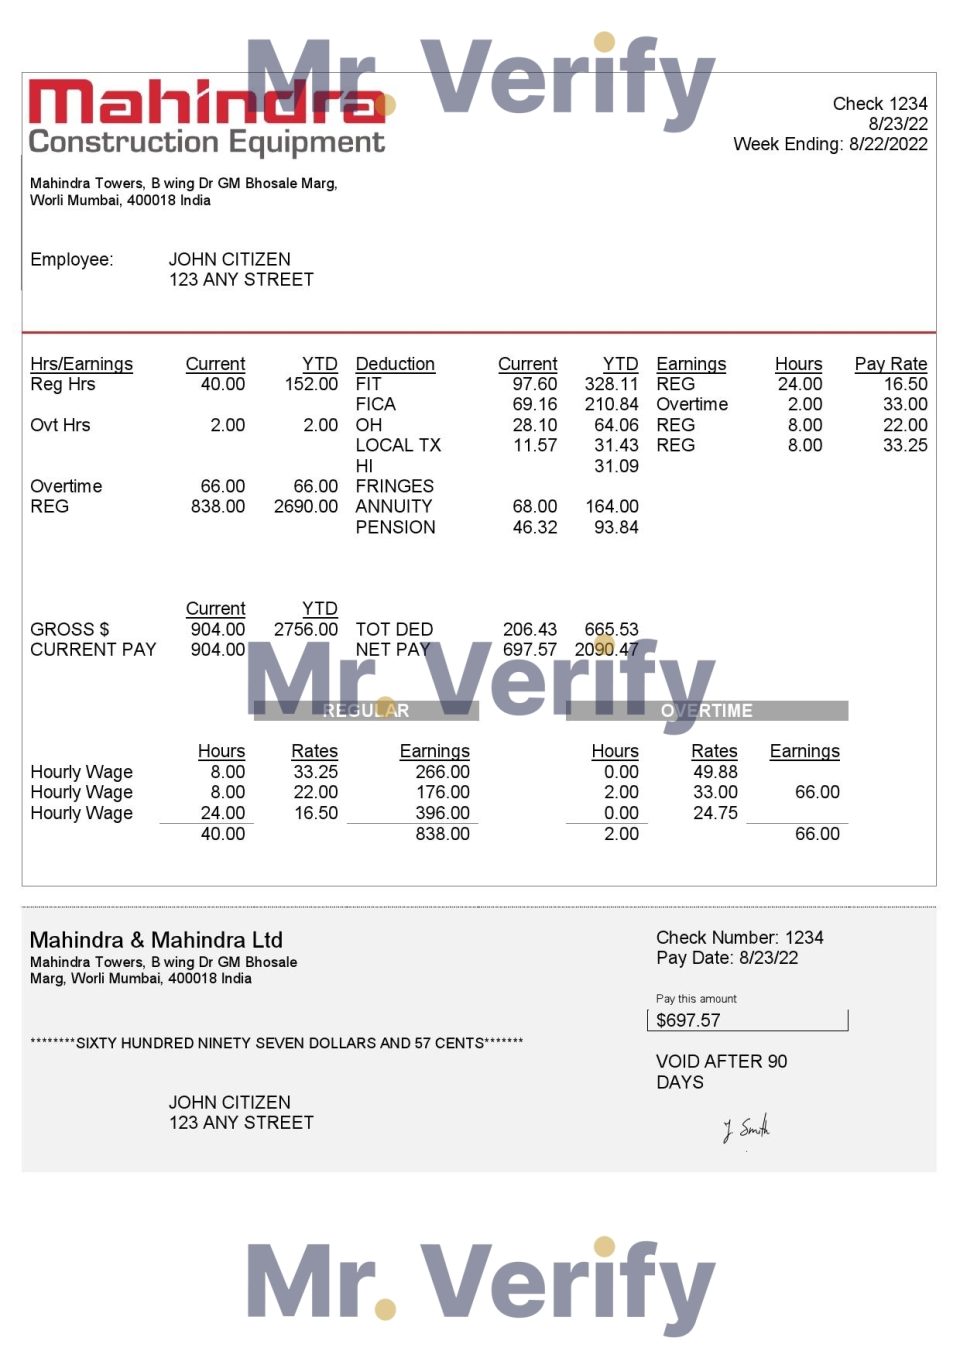 India Mahindra & Mahindra Ltd automotive industry company pay stub Word and PDF template